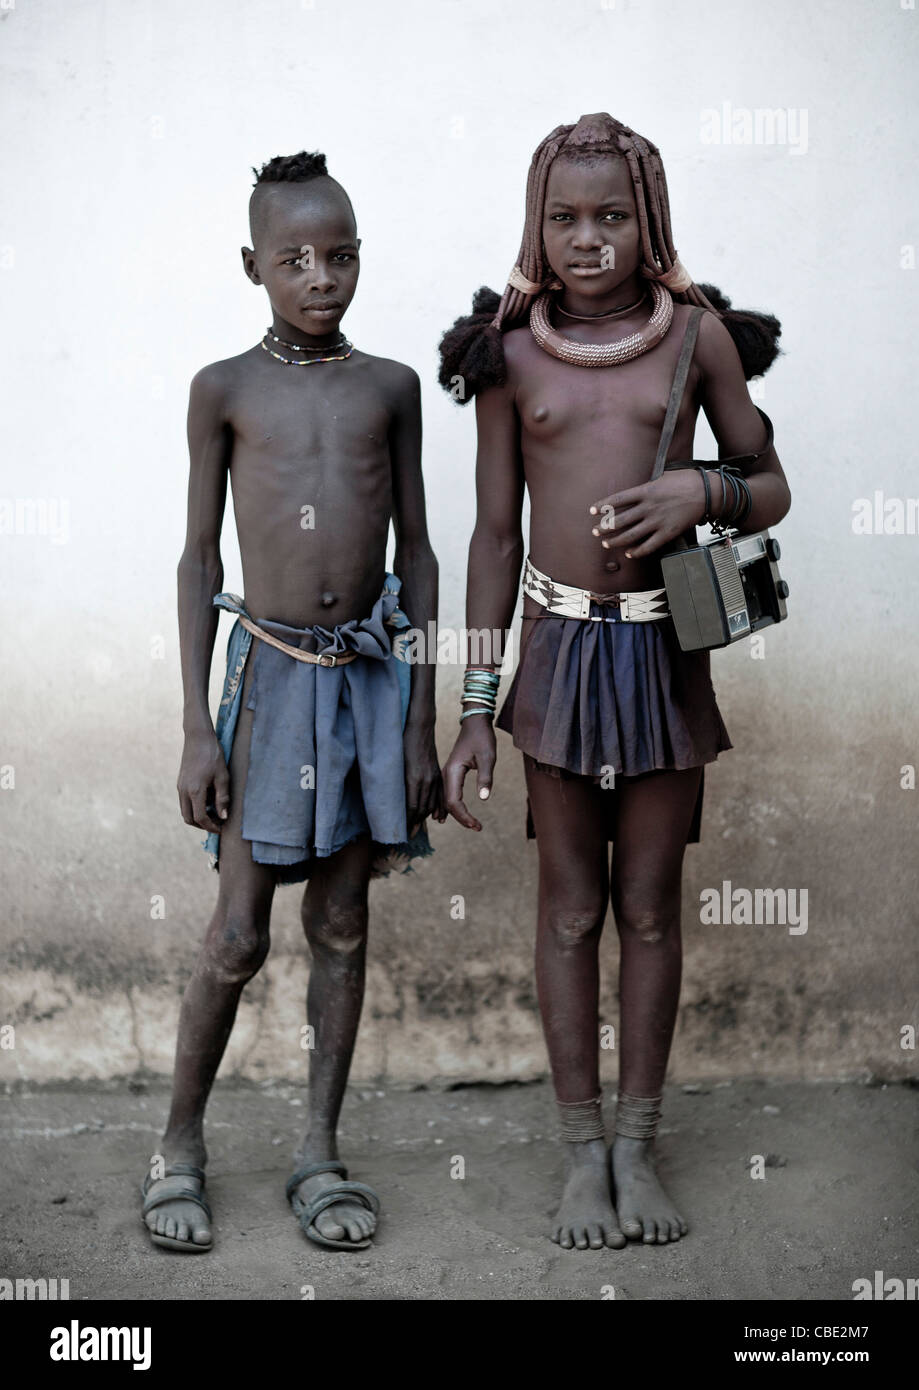 Kinder Des Himba Stammes Fotos Und Bildmaterial In Hoher Aufl Sung